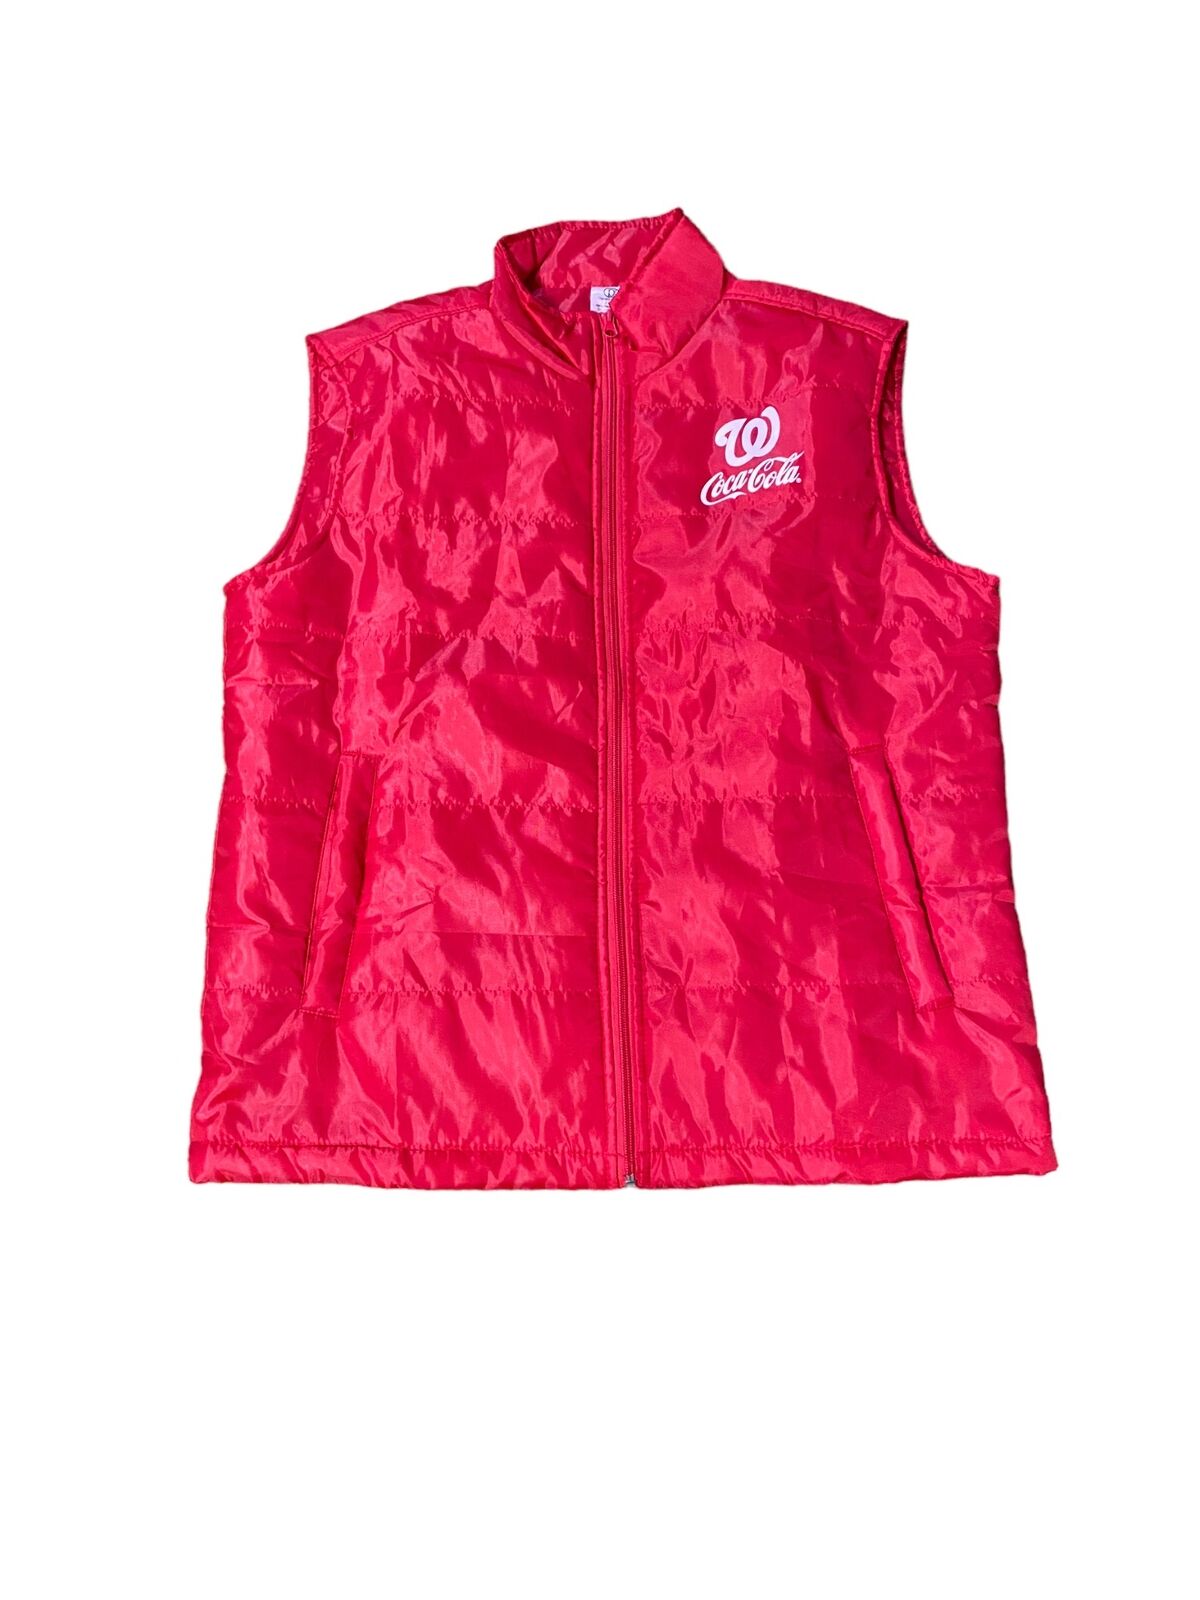 Washington Nationals MLB Men\'s Coca Cola Full Zip Vest Jacket Red (Size: L) NWOT